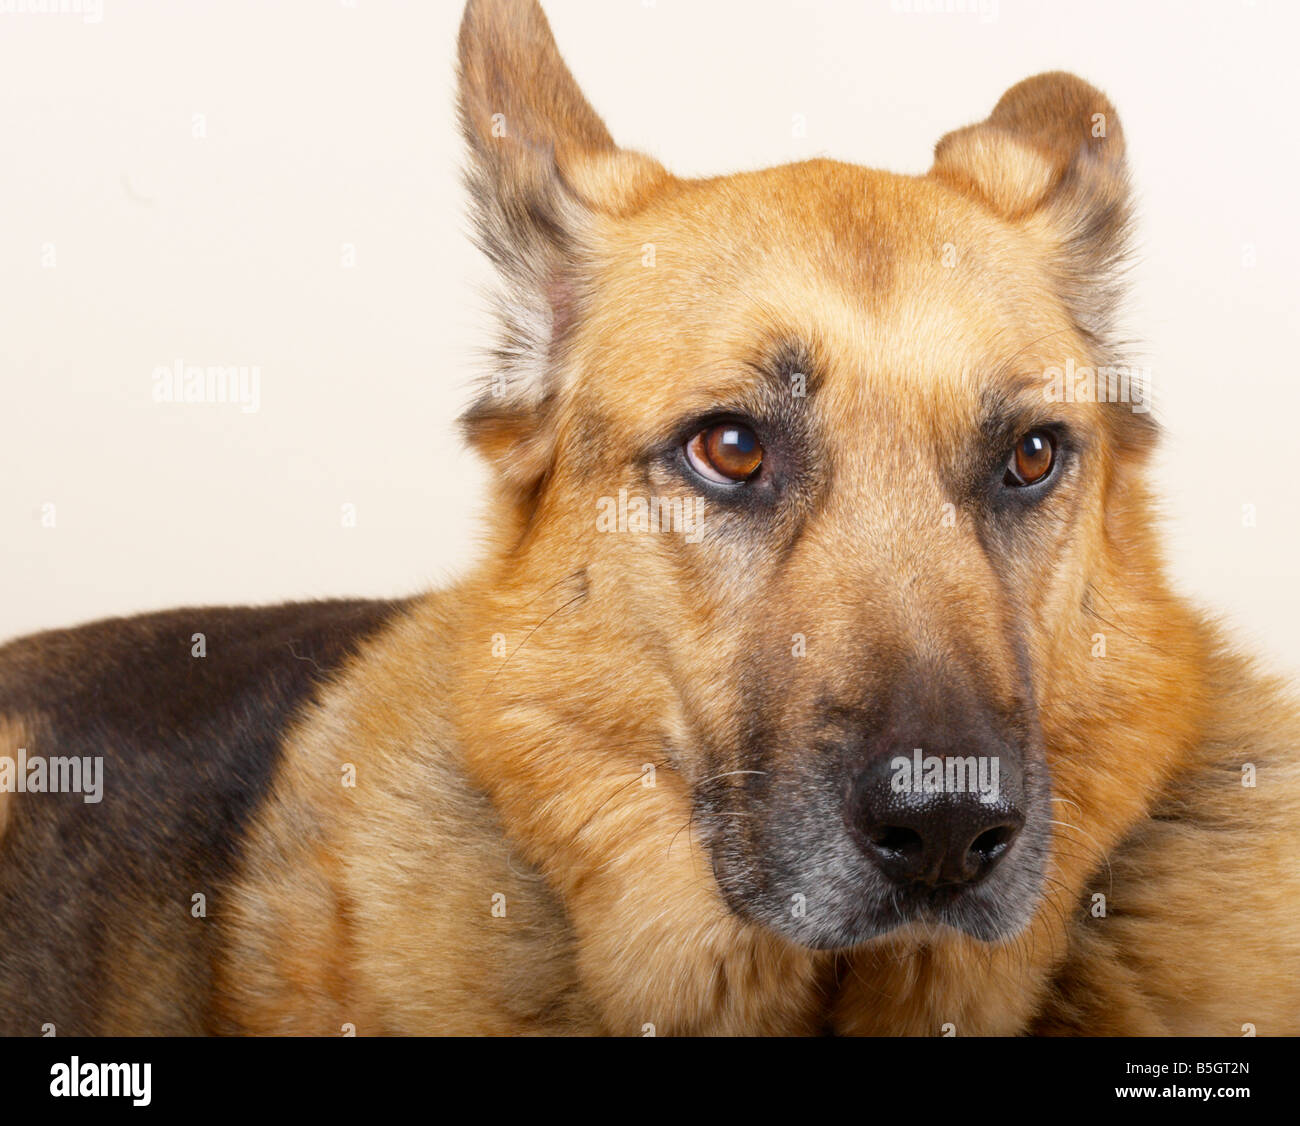 german shepherd dog / Alsatian Stock Photo